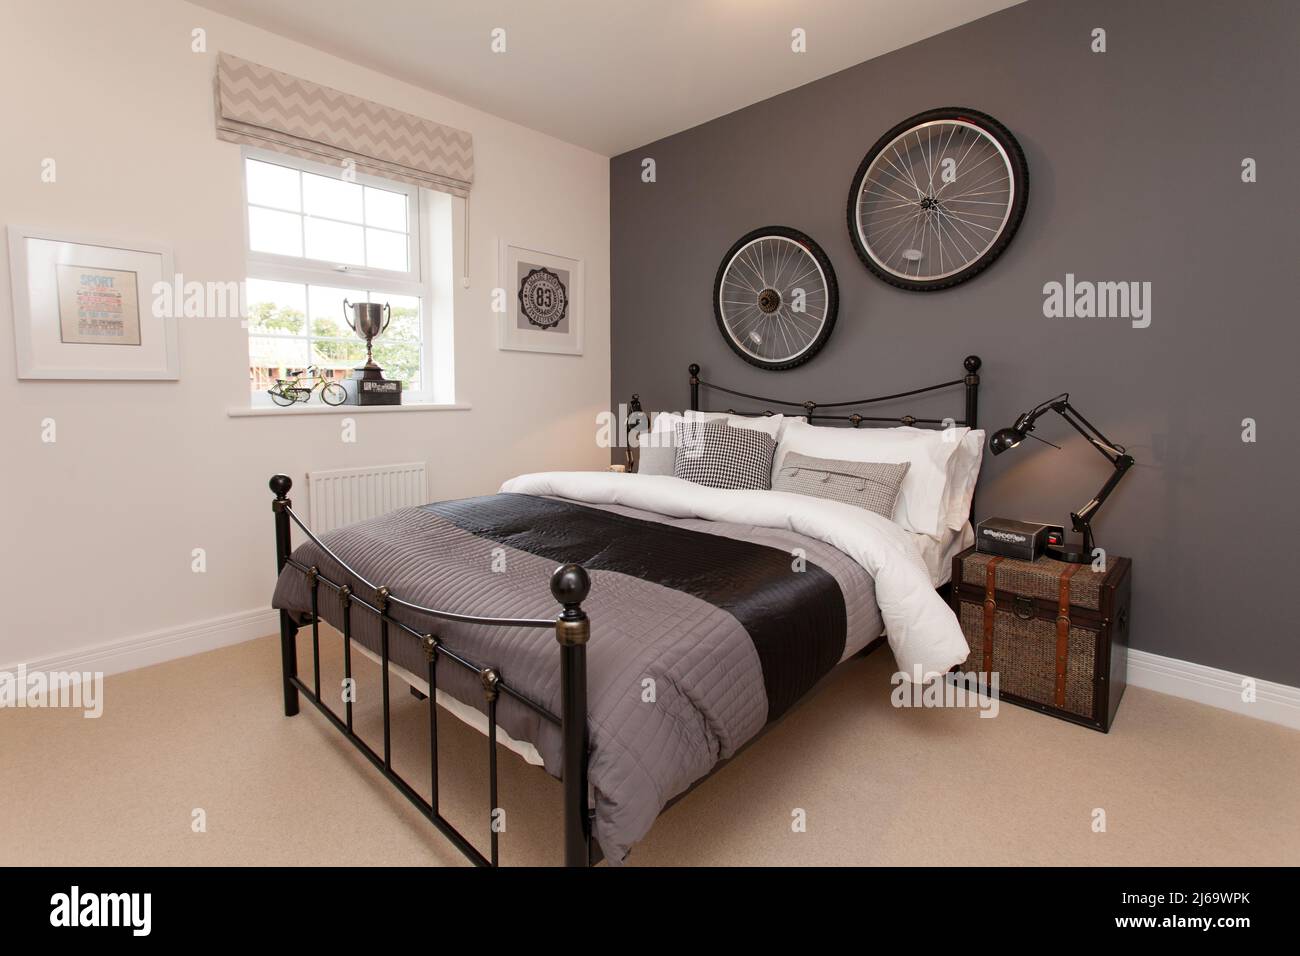 Dormitorio temático de ciclismo, ruedas de bicicleta en la pared, cama de hierro, Foto de stock